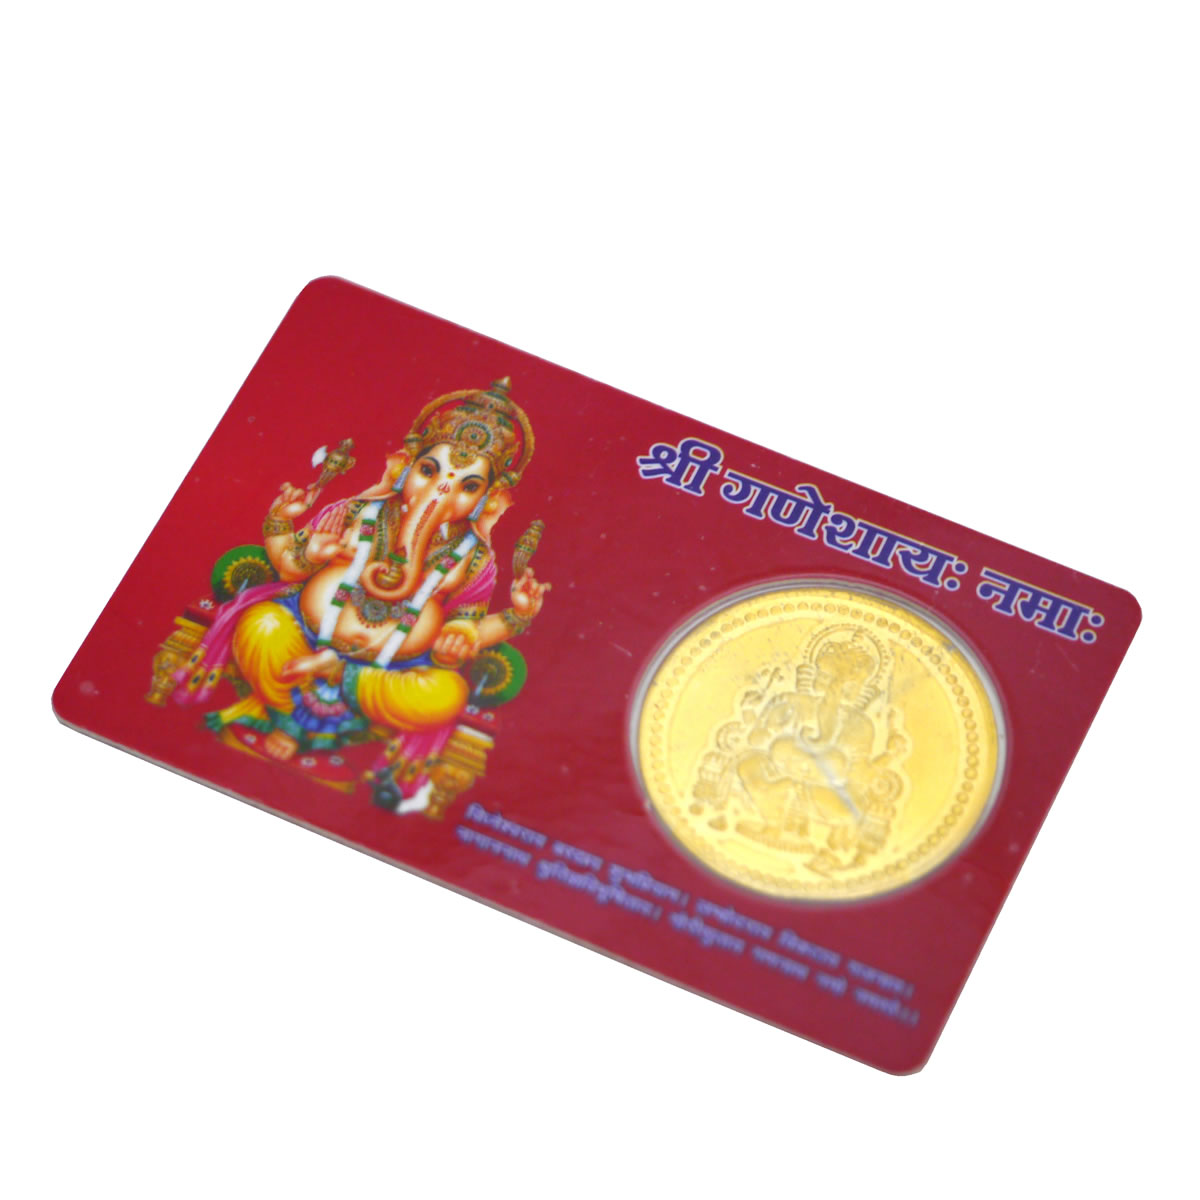 インドの神様ガネーシャとオームのカードタイプ金運アップお守り(レッド) /エスニック/アジアン雑貨